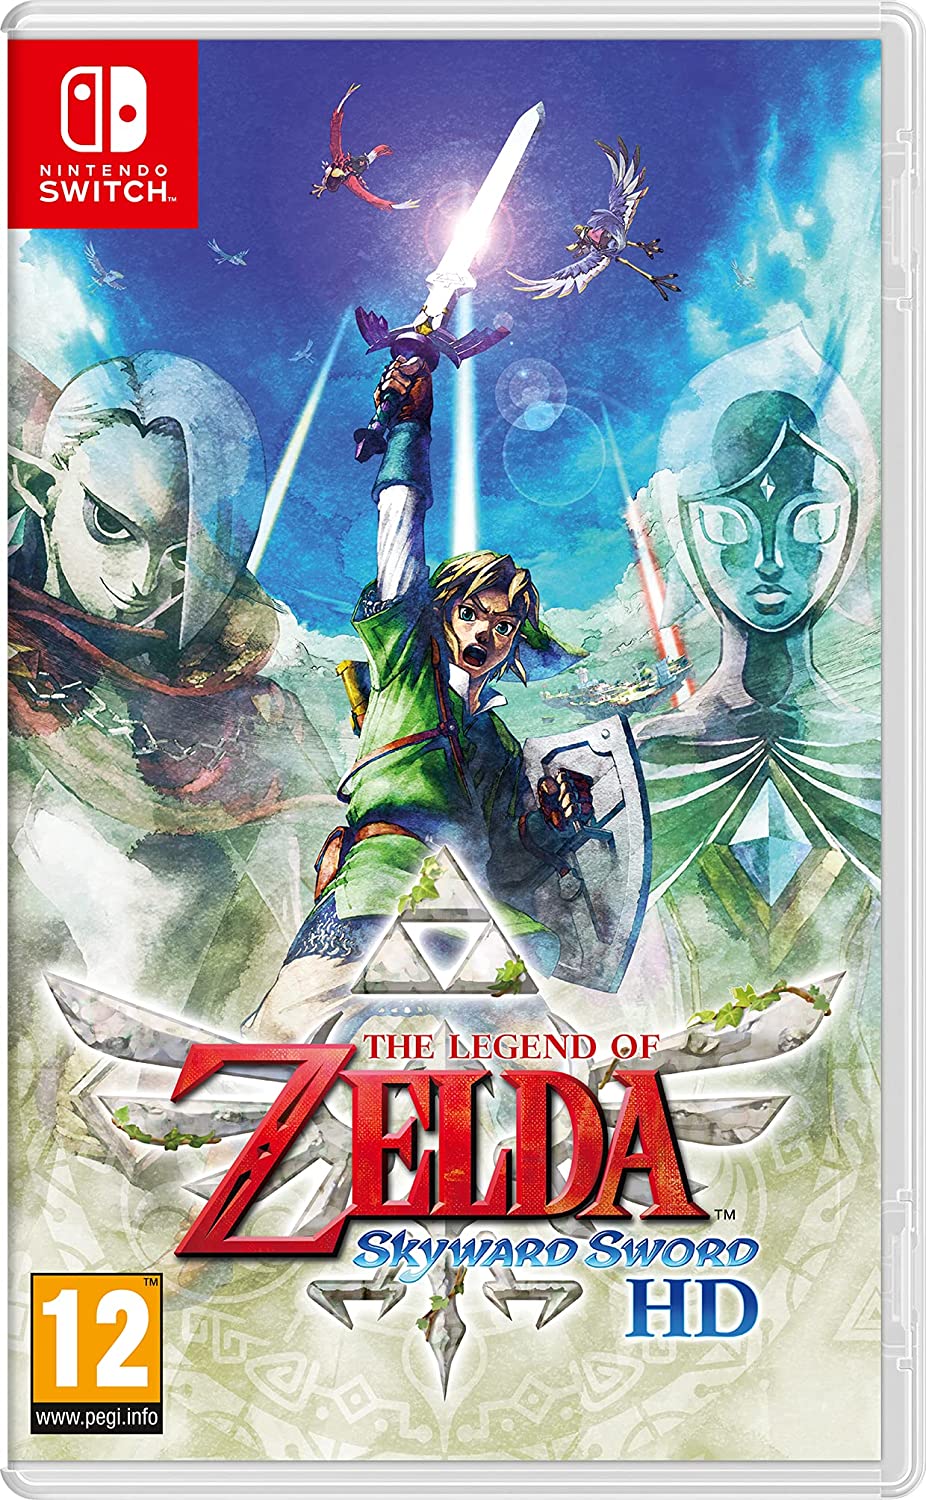 The Legend of Zelda: Skyward Sword cover art.